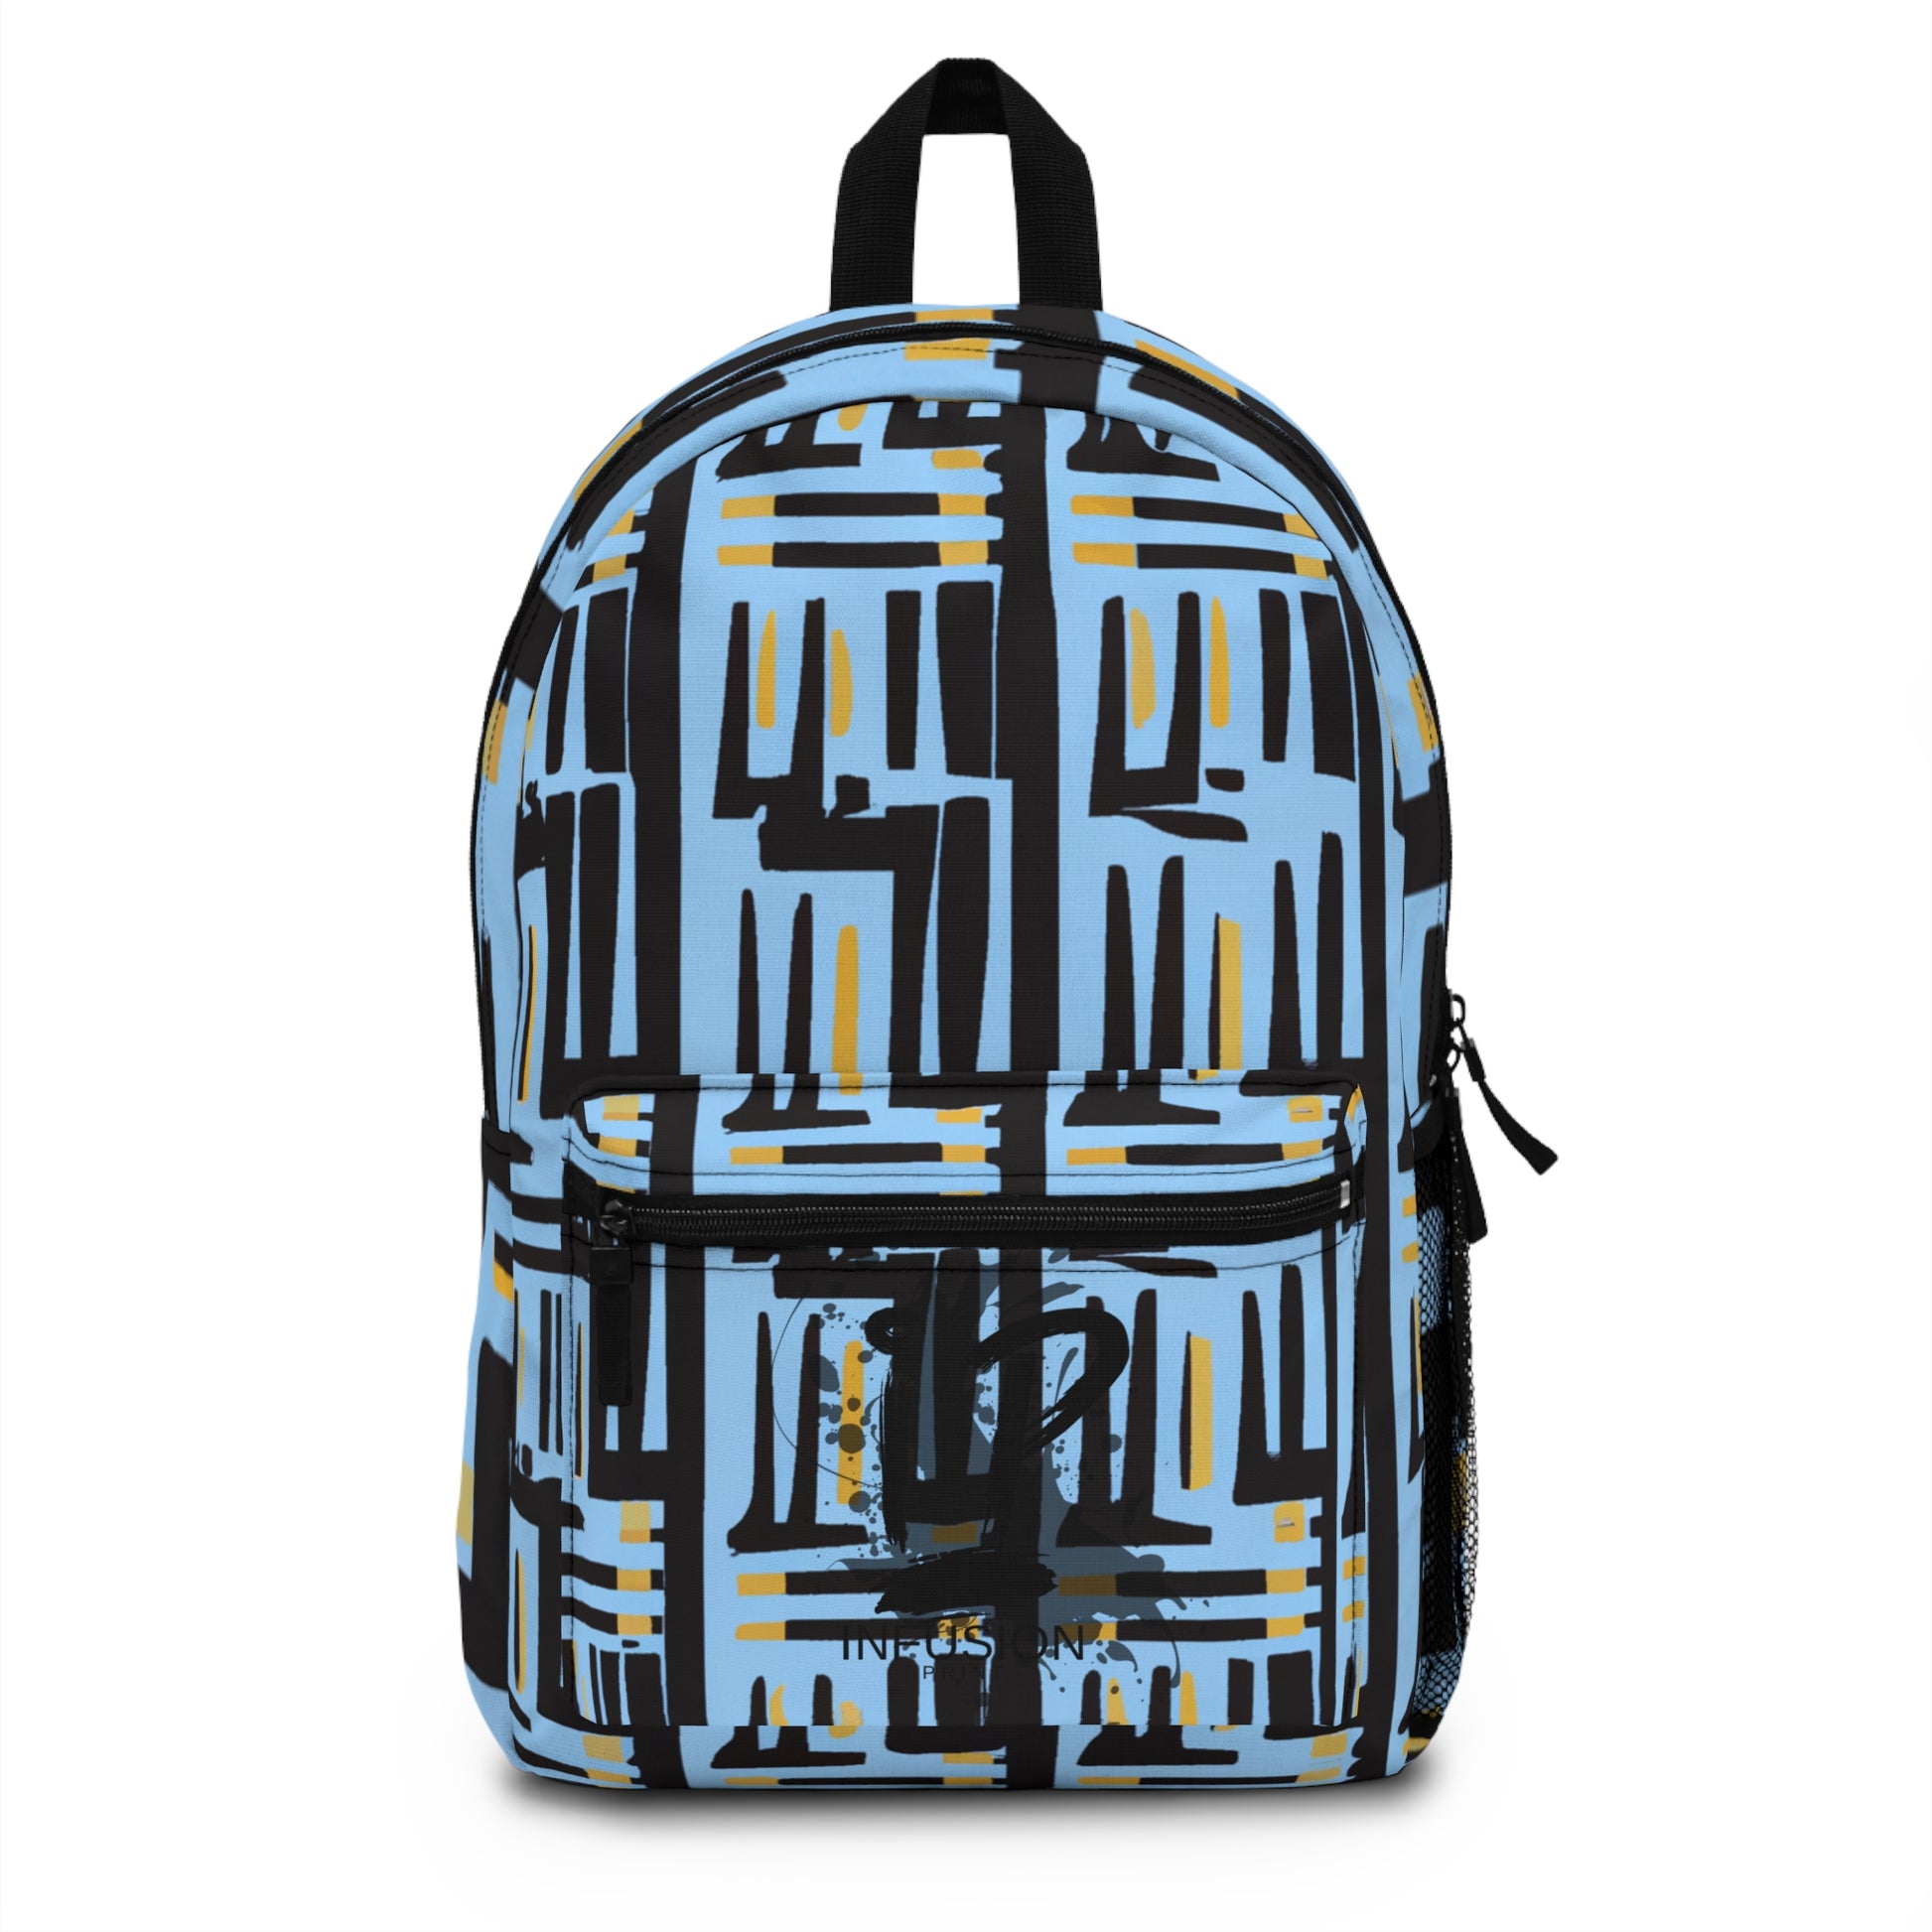 Vincent van Gogh - Backpack